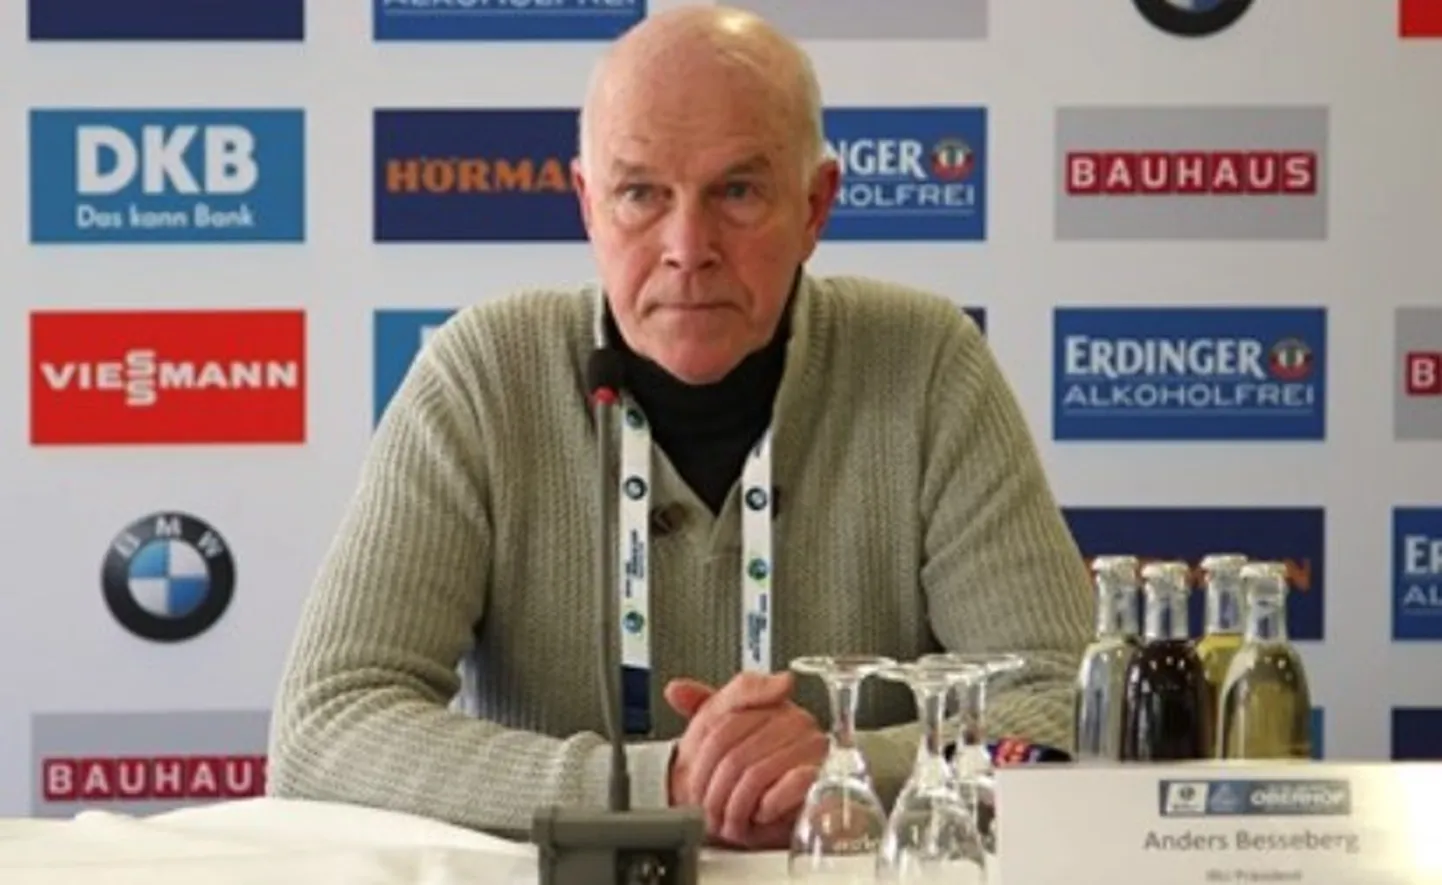 Endine IBU boss Anders Bessenberg.